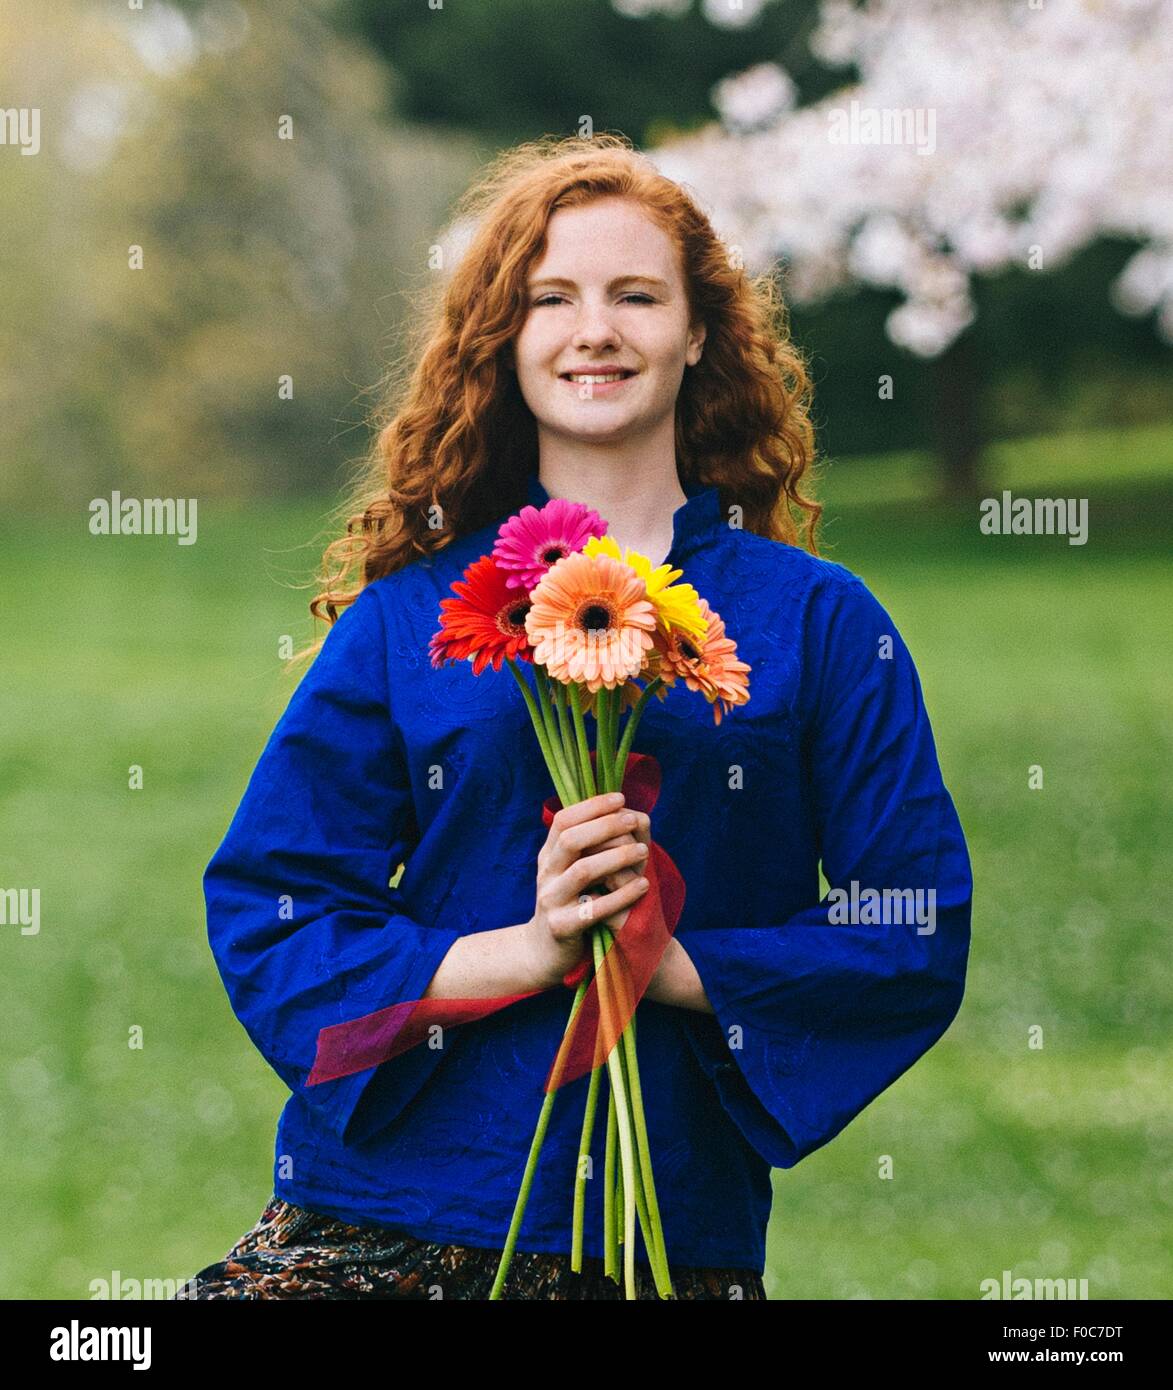 Portrait de jeune femme avec de longs cheveux roux ondulés holding bunch of flowers in park Banque D'Images